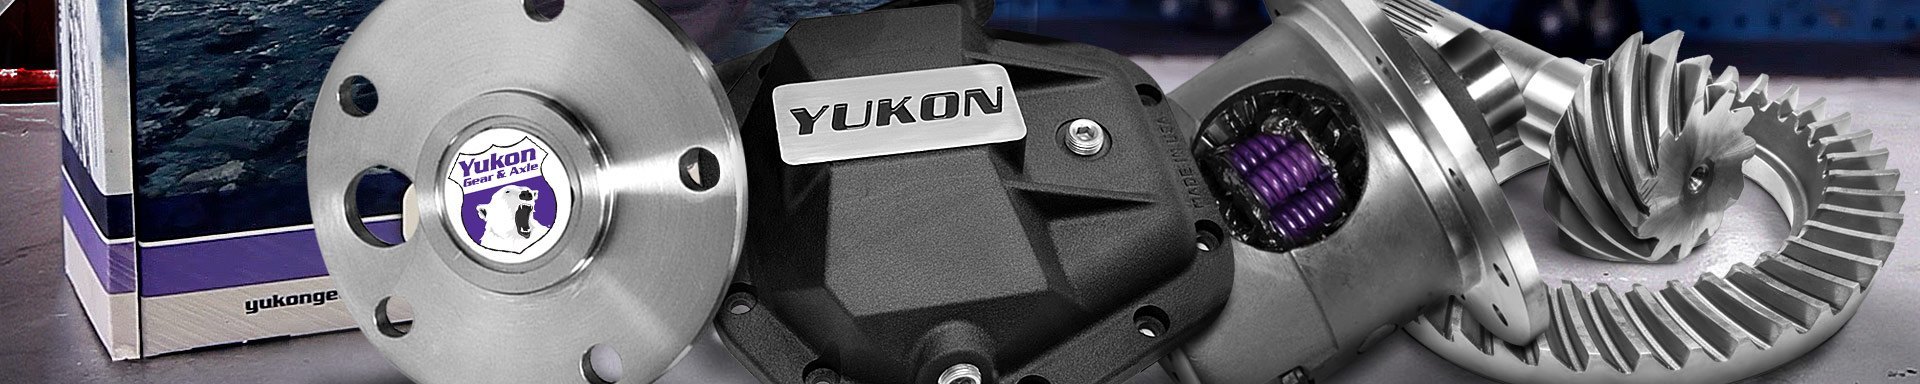 Yukon Gear & Axle Pullers & Installers